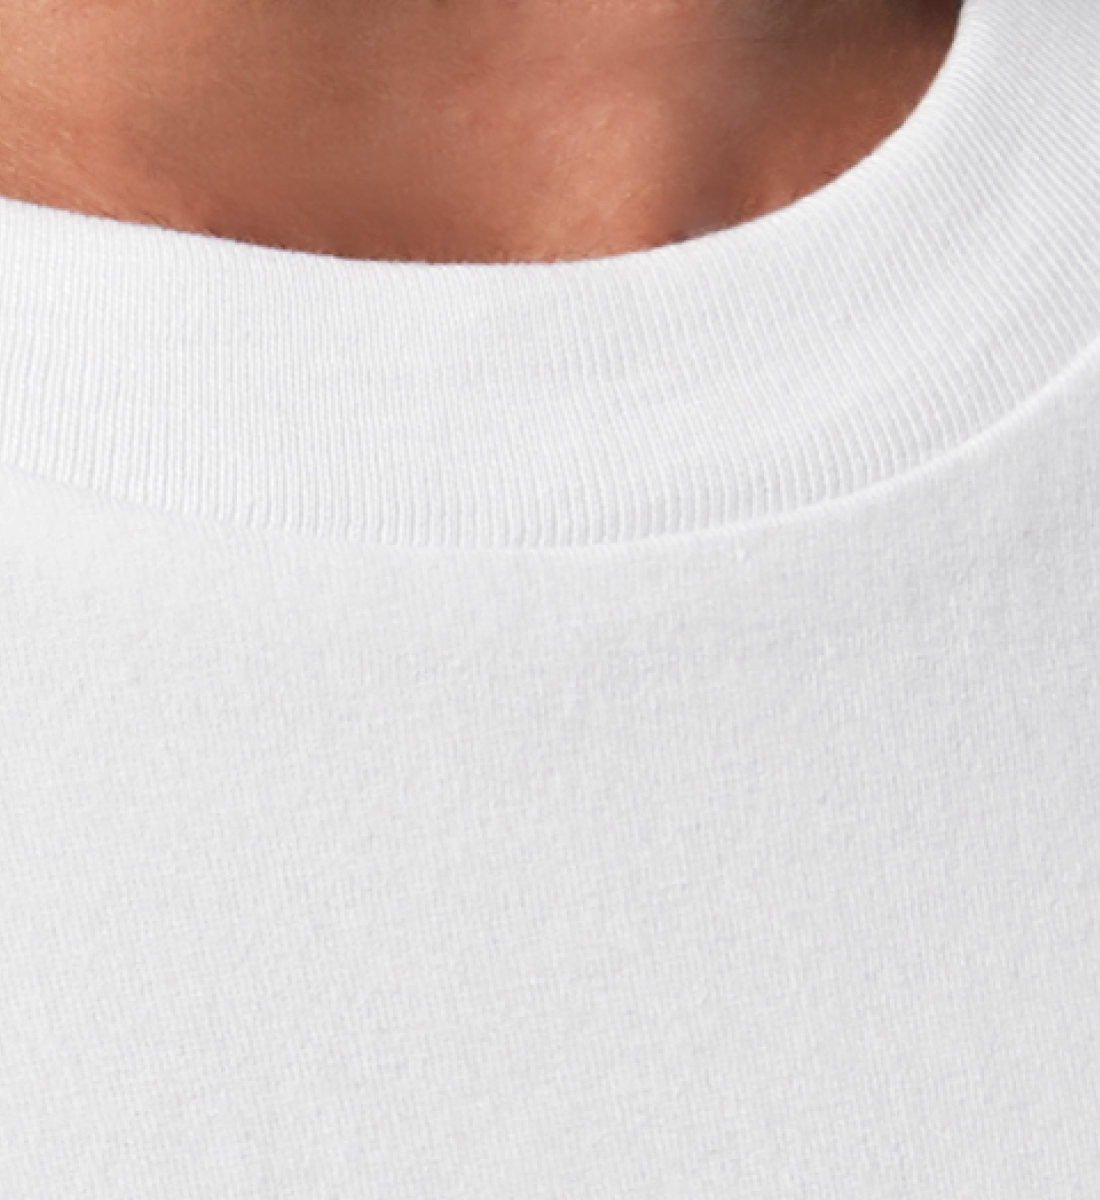 Weißes T-Shirt Unisex Damen und Herren rückseitig in weiß und orange bedruckt mit Skateboard Style Print und Logo Schriftzug von Roger Rockawoo Clothing aus der Skateboard Hiss off Kollektion